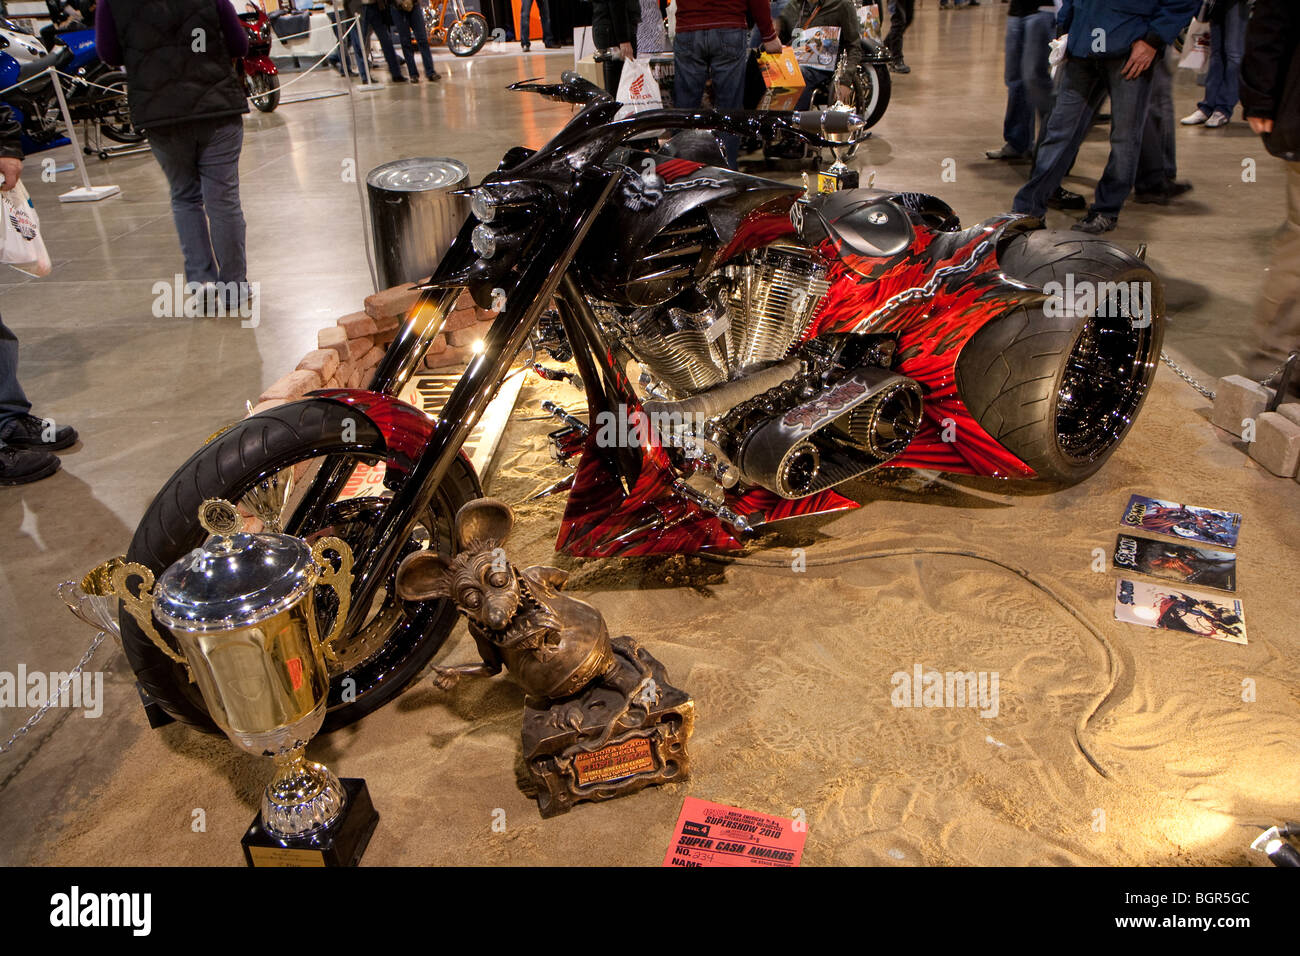 La moto à trois roues rouge utilisée dans le film spawn, design personnalisé et construit Banque D'Images